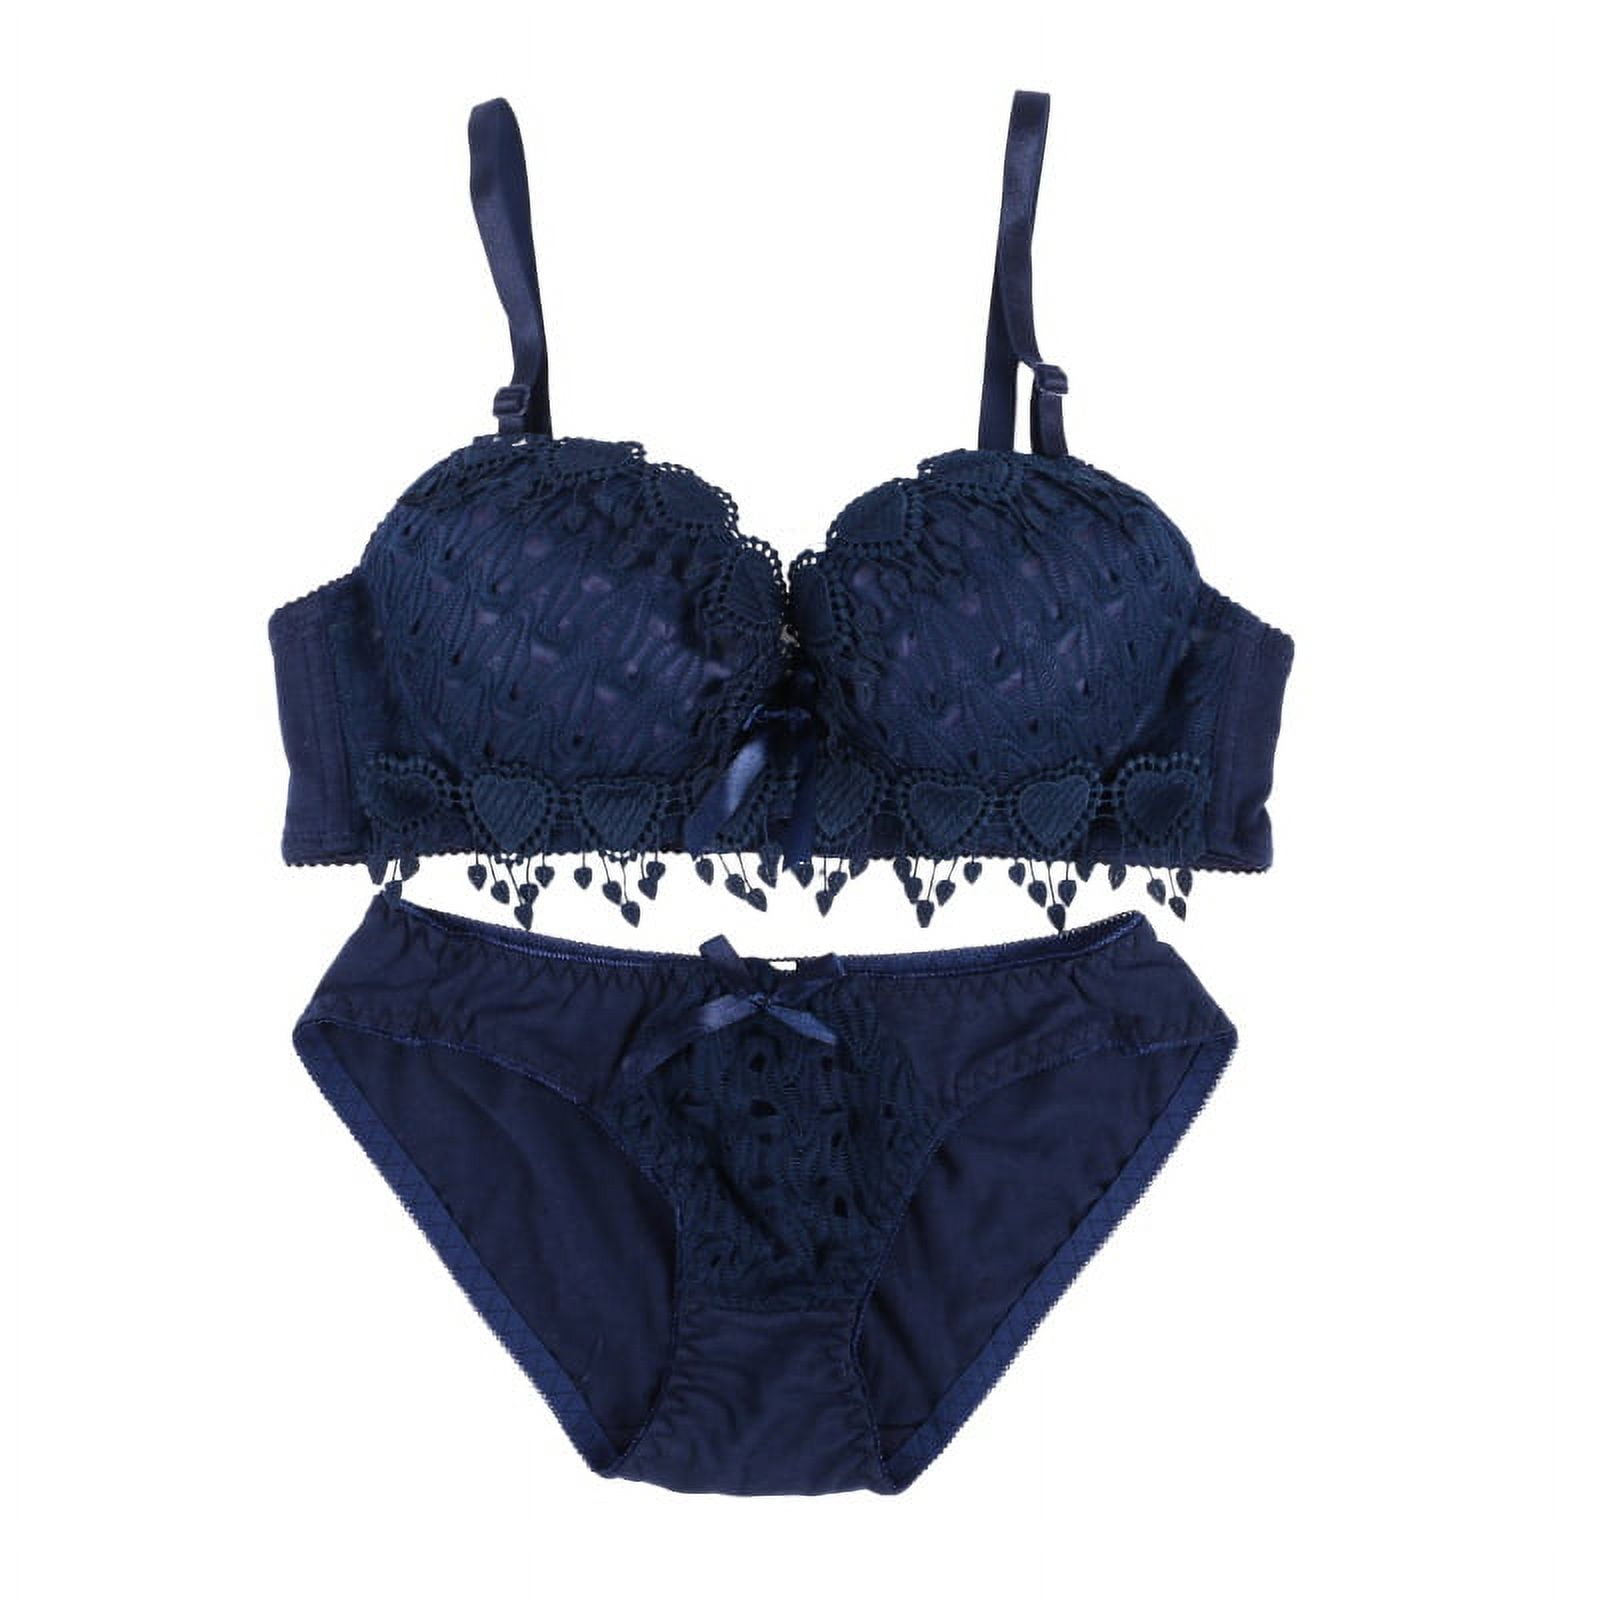 Vasarette, Intimates & Sleepwear, Vassarette Navy Blue Bra Size 4c